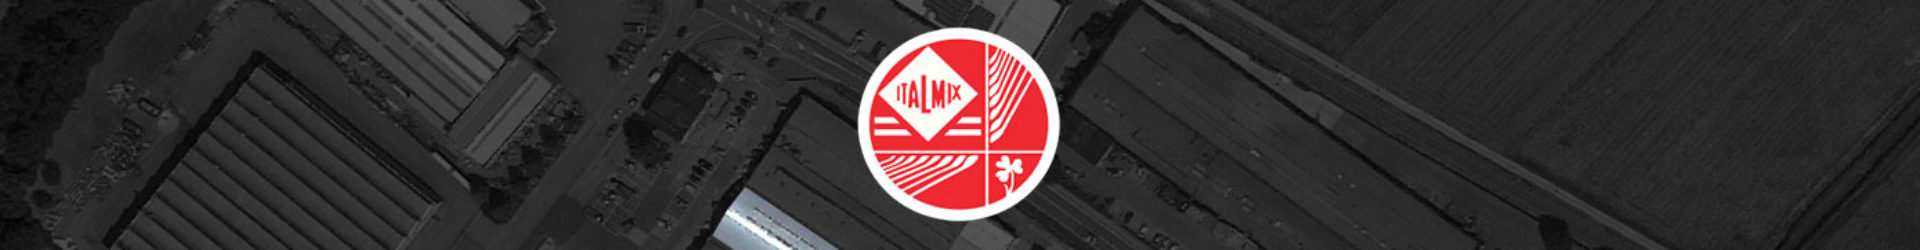 Italmix - Dal 1979 selezioniamo qualità